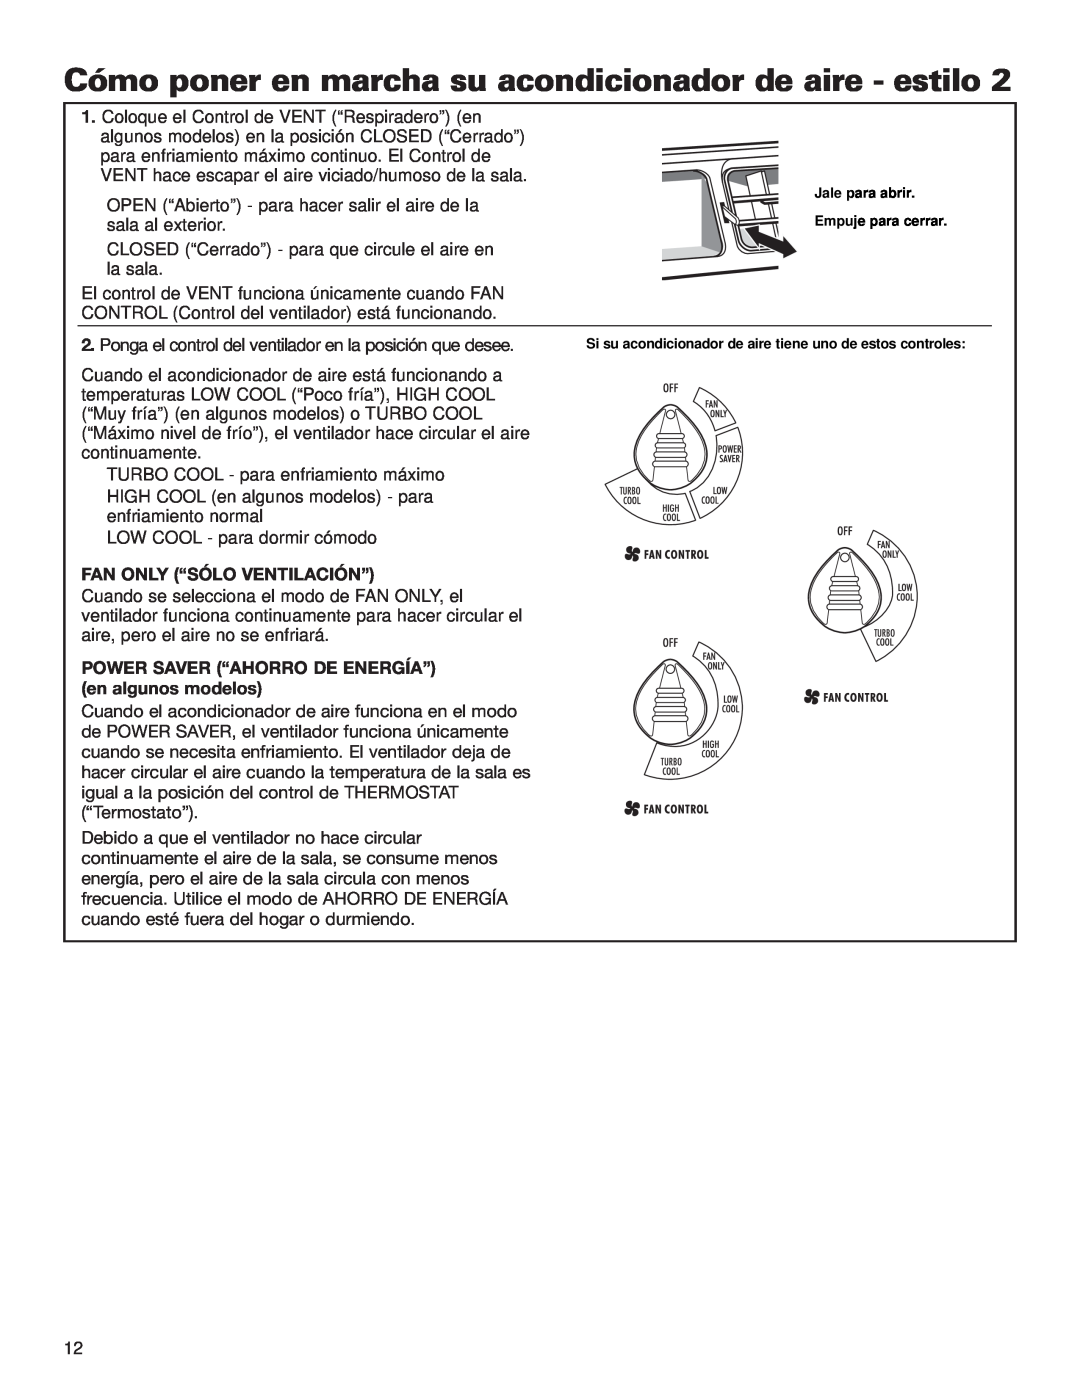 Whirlpool ACE184XL0 manual Fan Only “Sólo Ventilación”, POWER SAVER “AHORRO DE ENERGÍA” en algunos modelos 